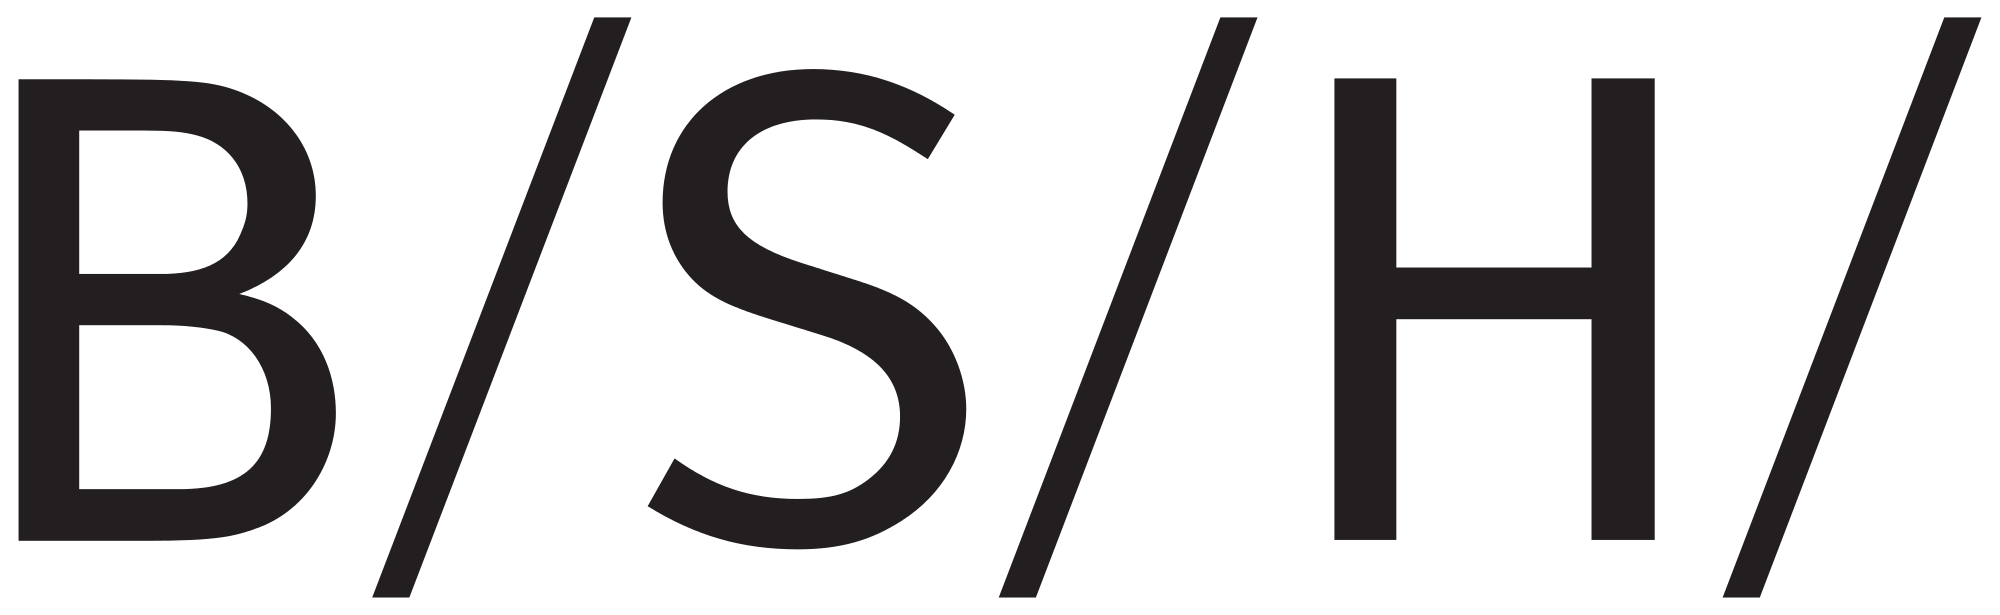 image-10113536-BSH_Bosch_und_Siemens_Hausgeräte_logo.svg-e4da3.png